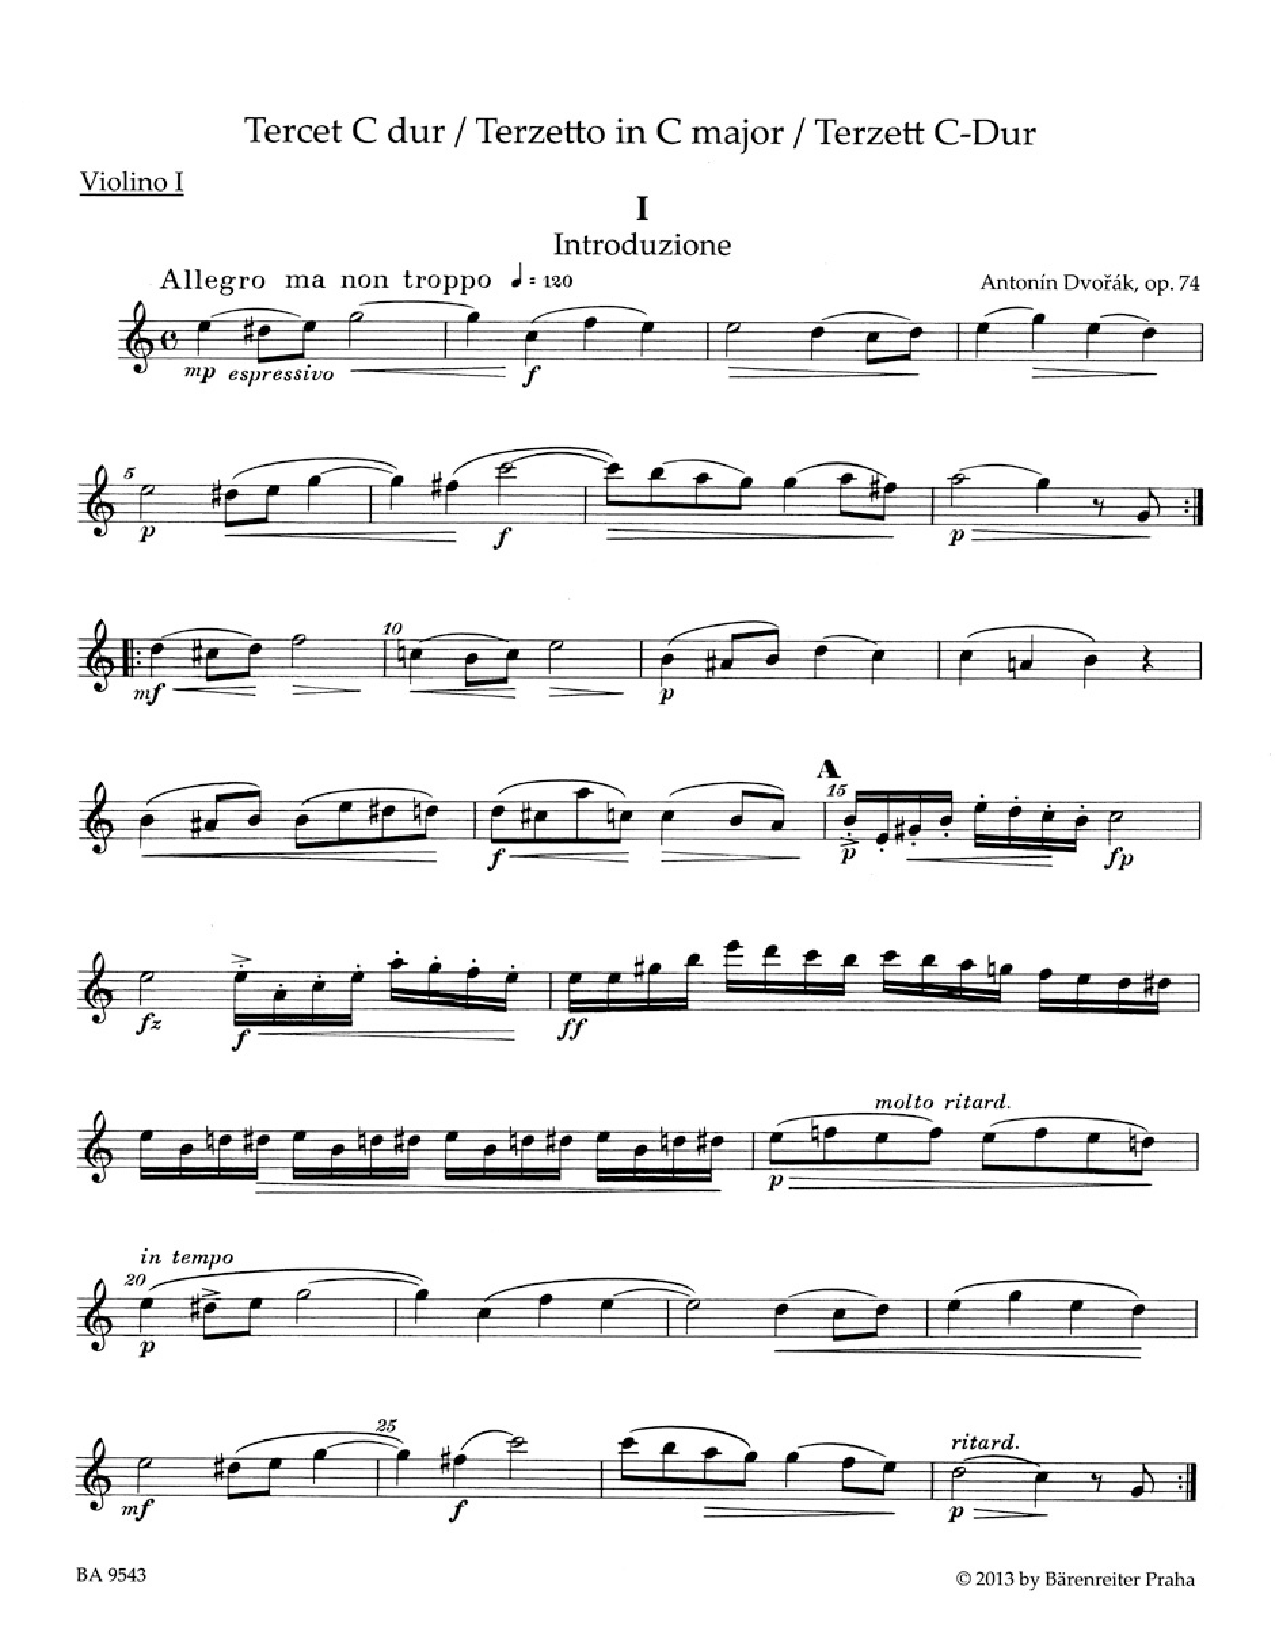 Terzetto in C Major Op 74 2 Violins and Viola Parts